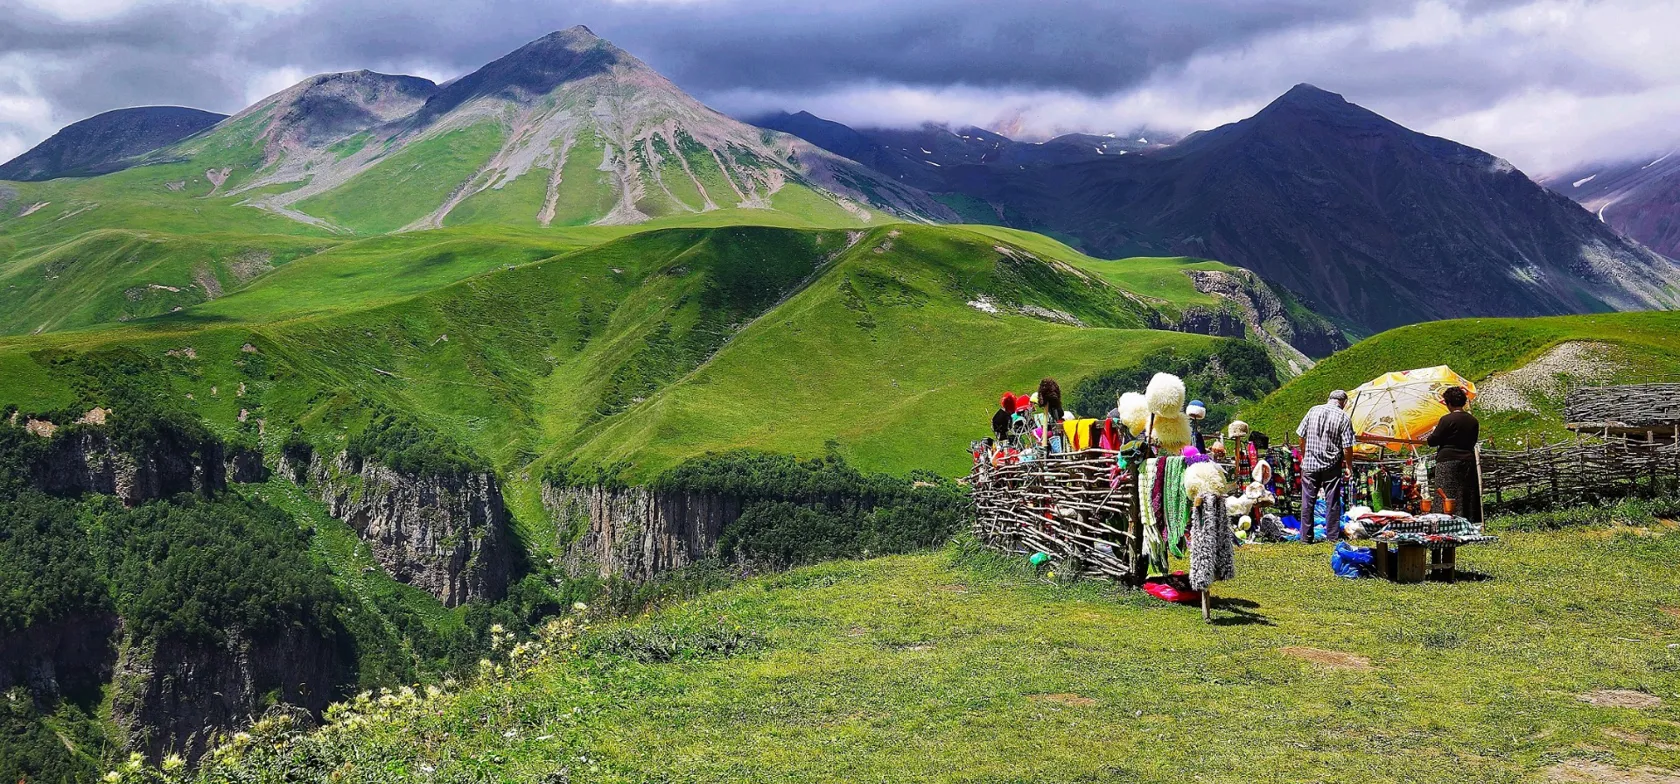 Man kan være heldig at finde traditionelle kaukasiske fåreskindshuer til salg i Kaukasus-regionen. Foto Richard Mcall